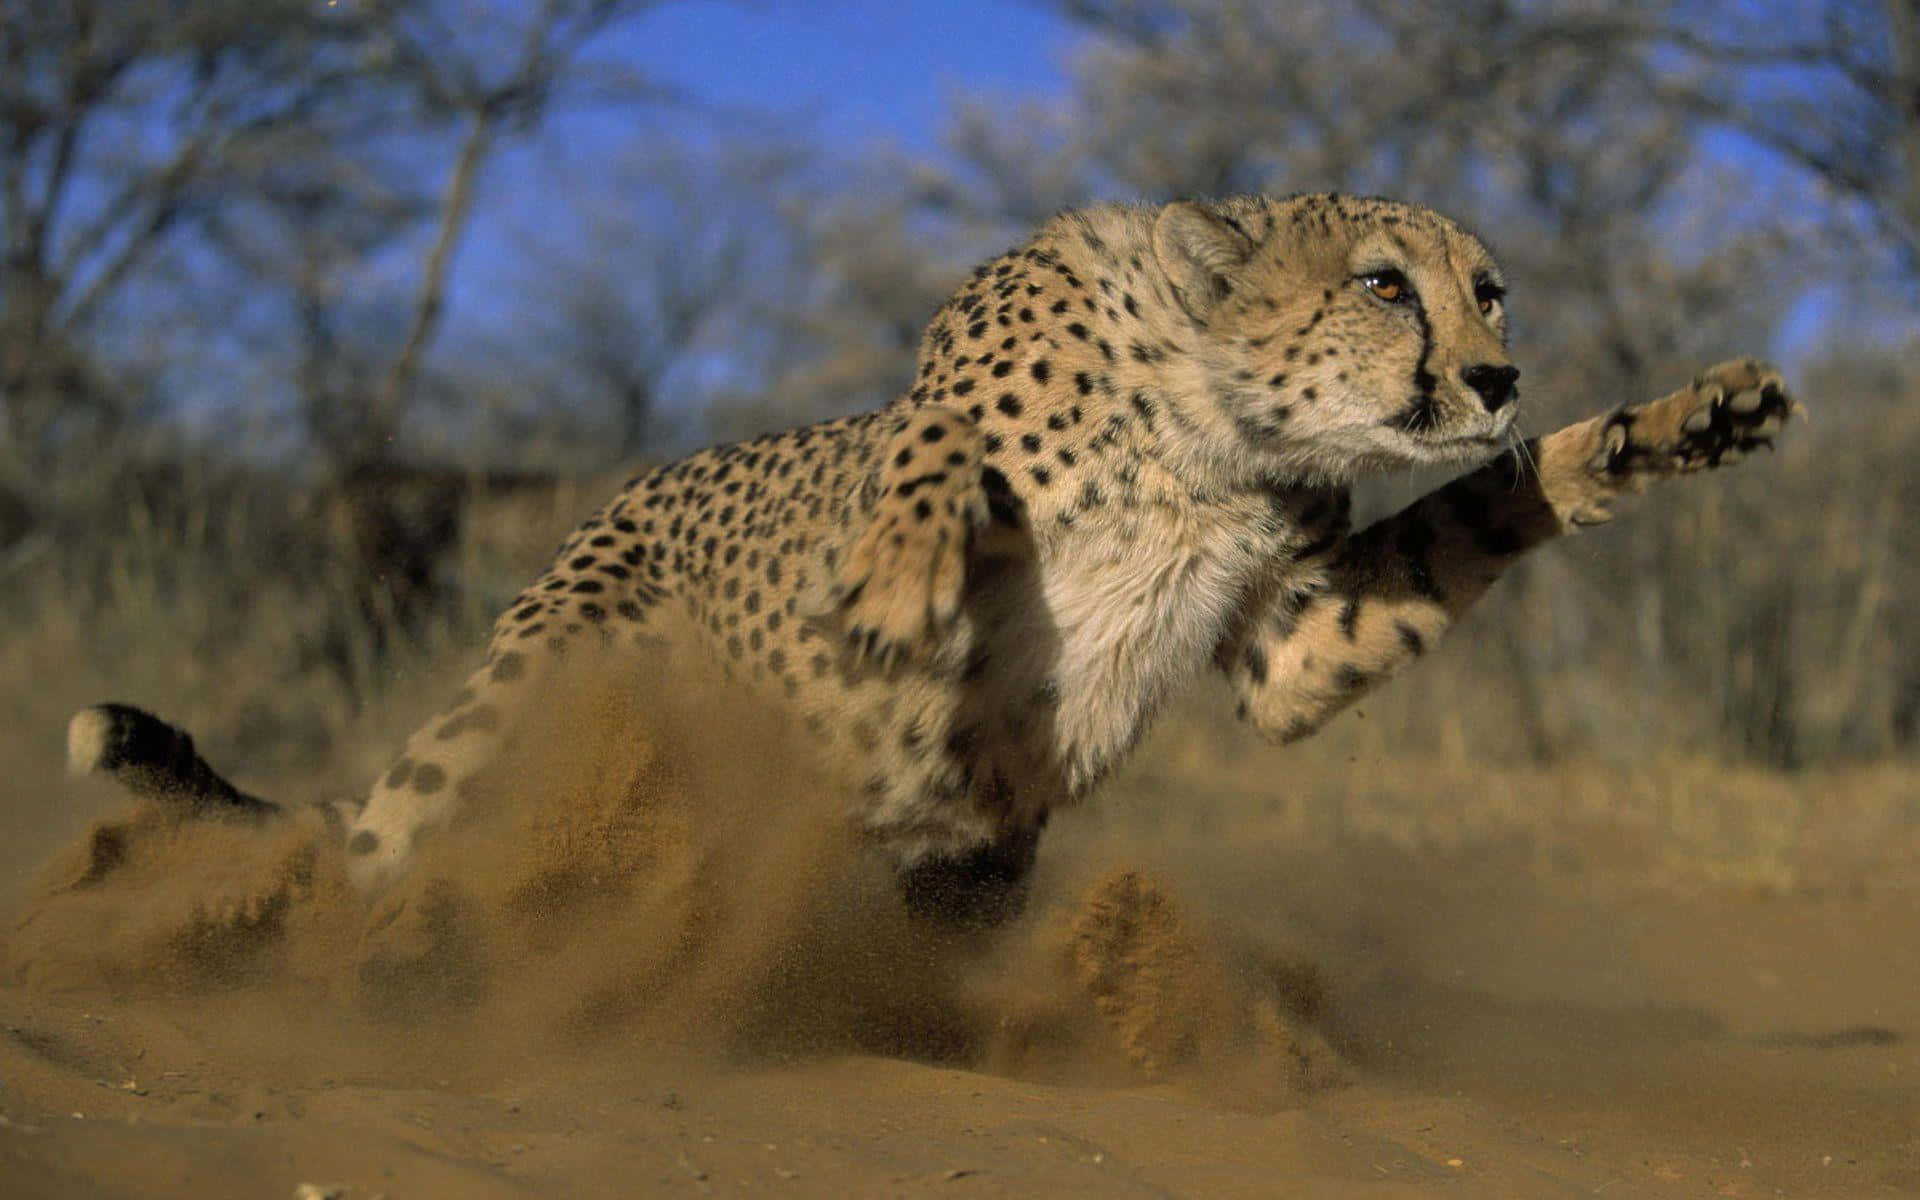 A Cheetah blending into its natural environment